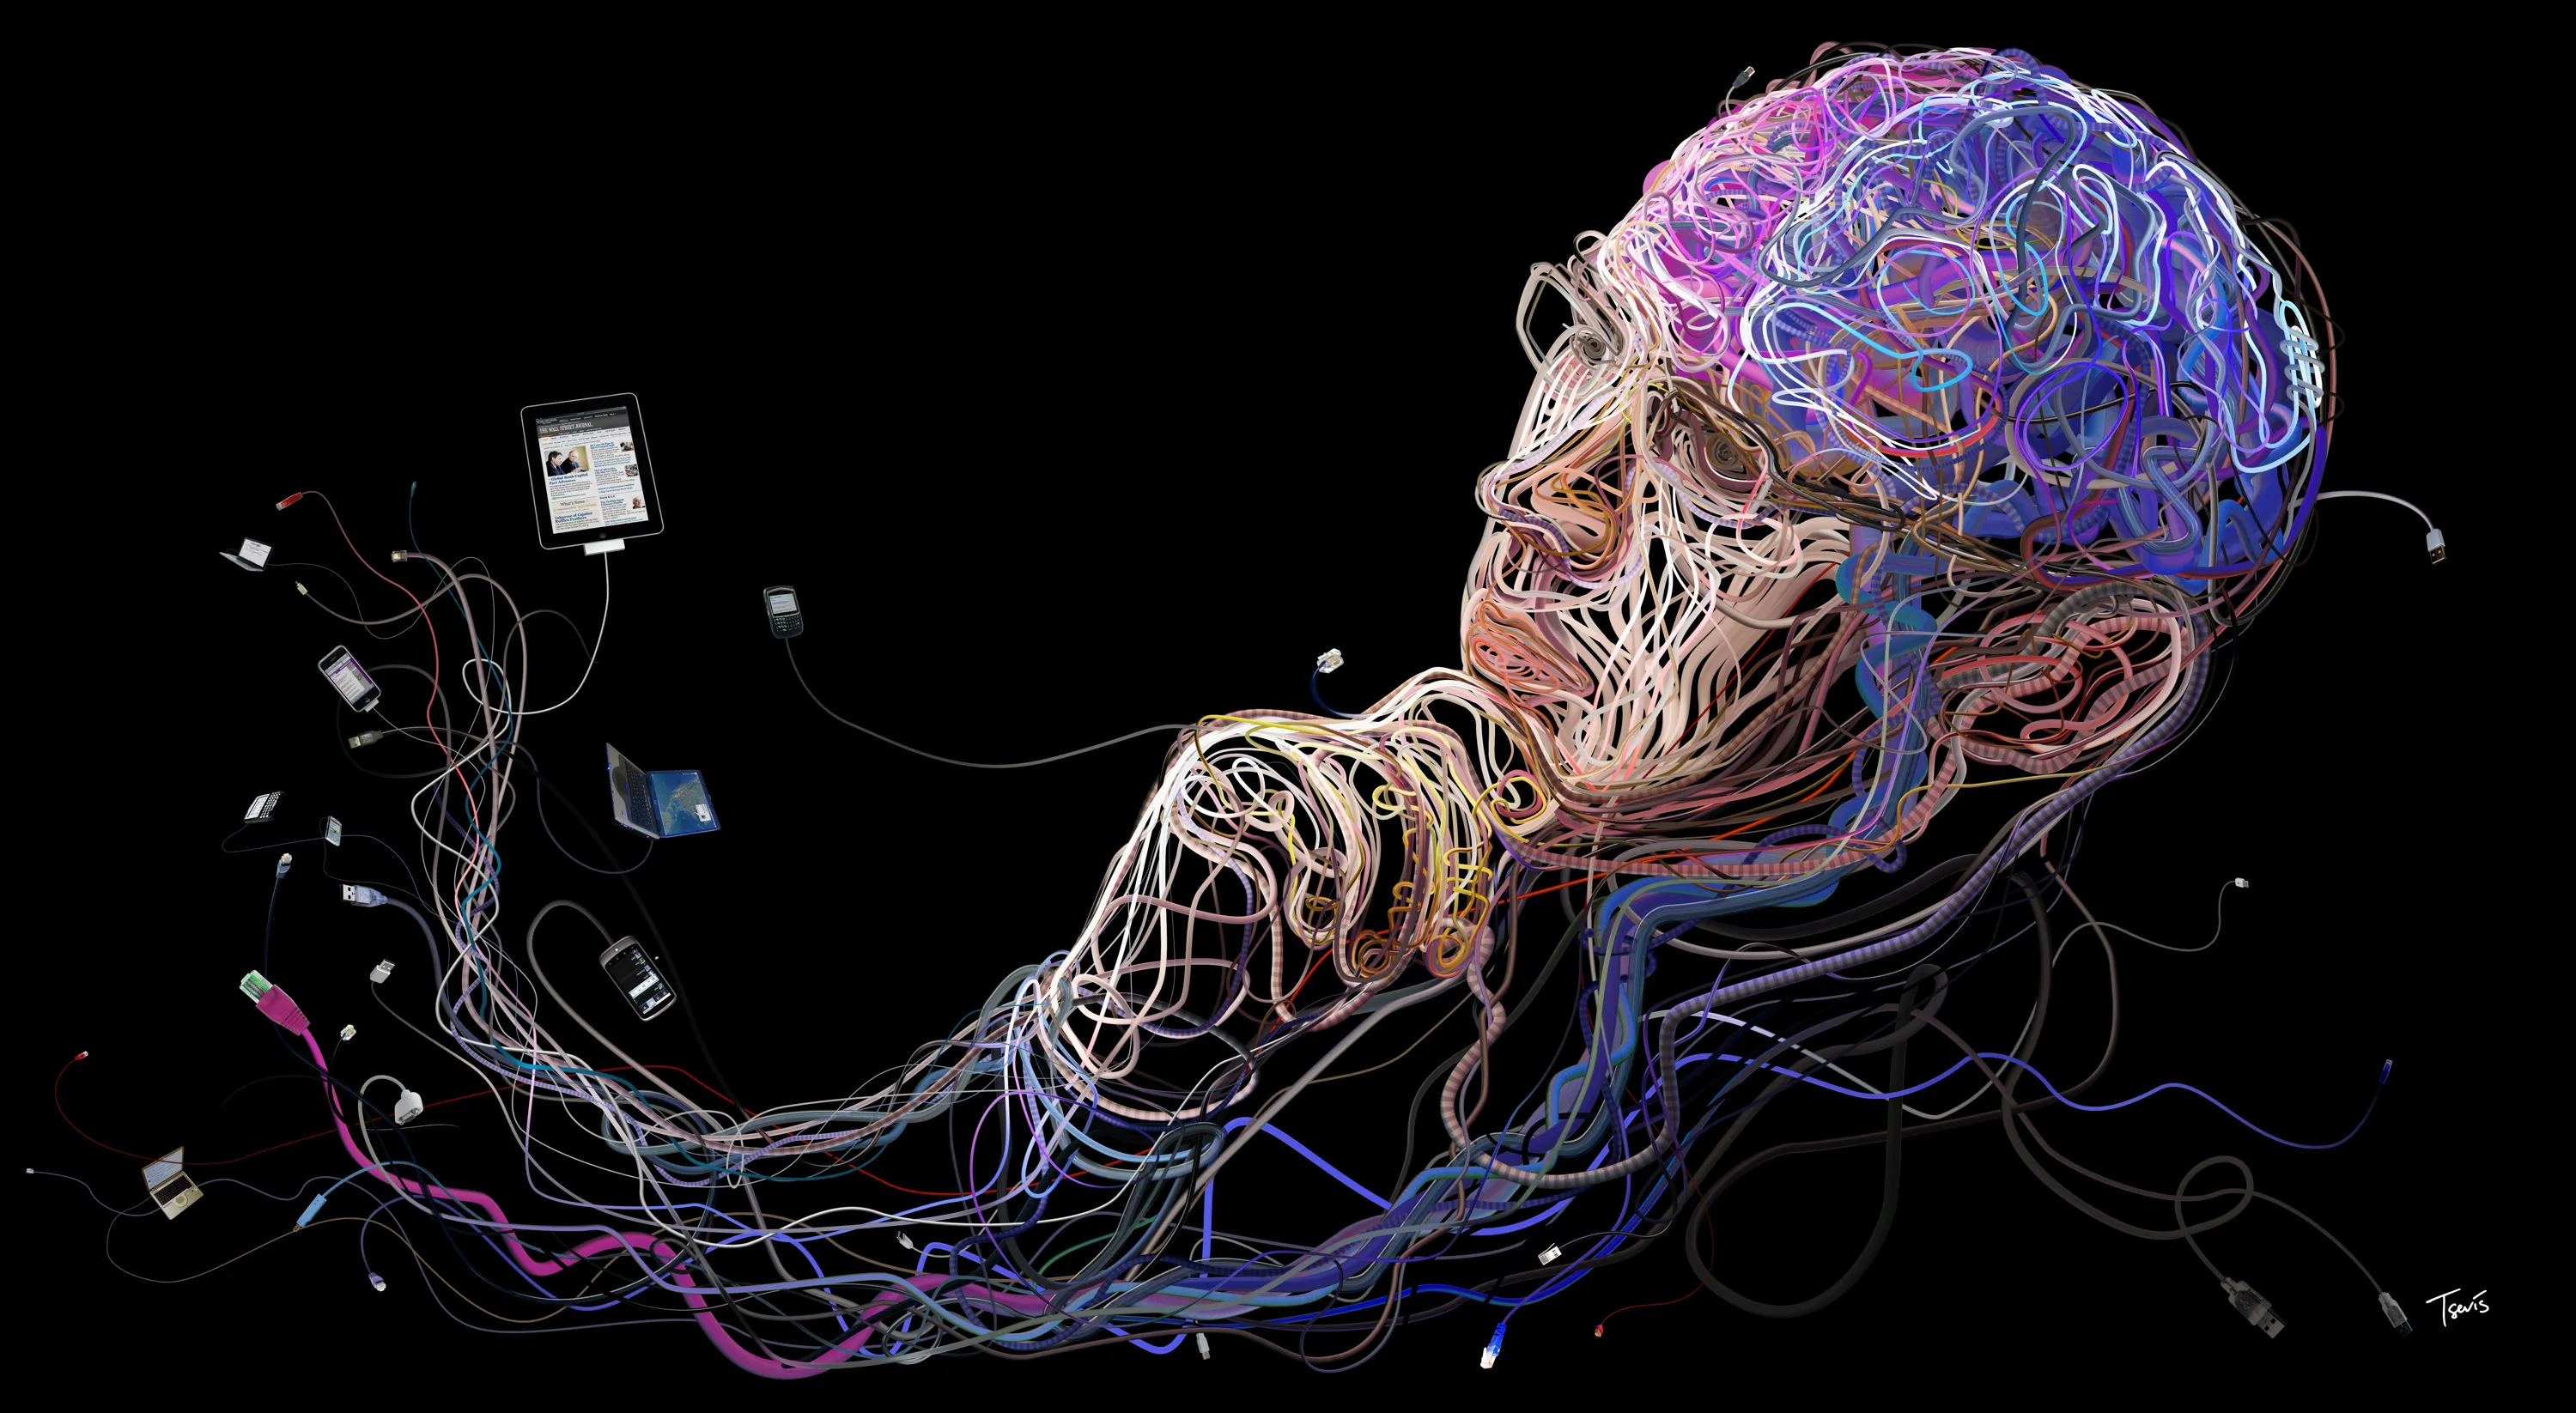 Самая большая нейросеть. Изображение мозга. Запрограммированный мозг. Визуализация мозга.